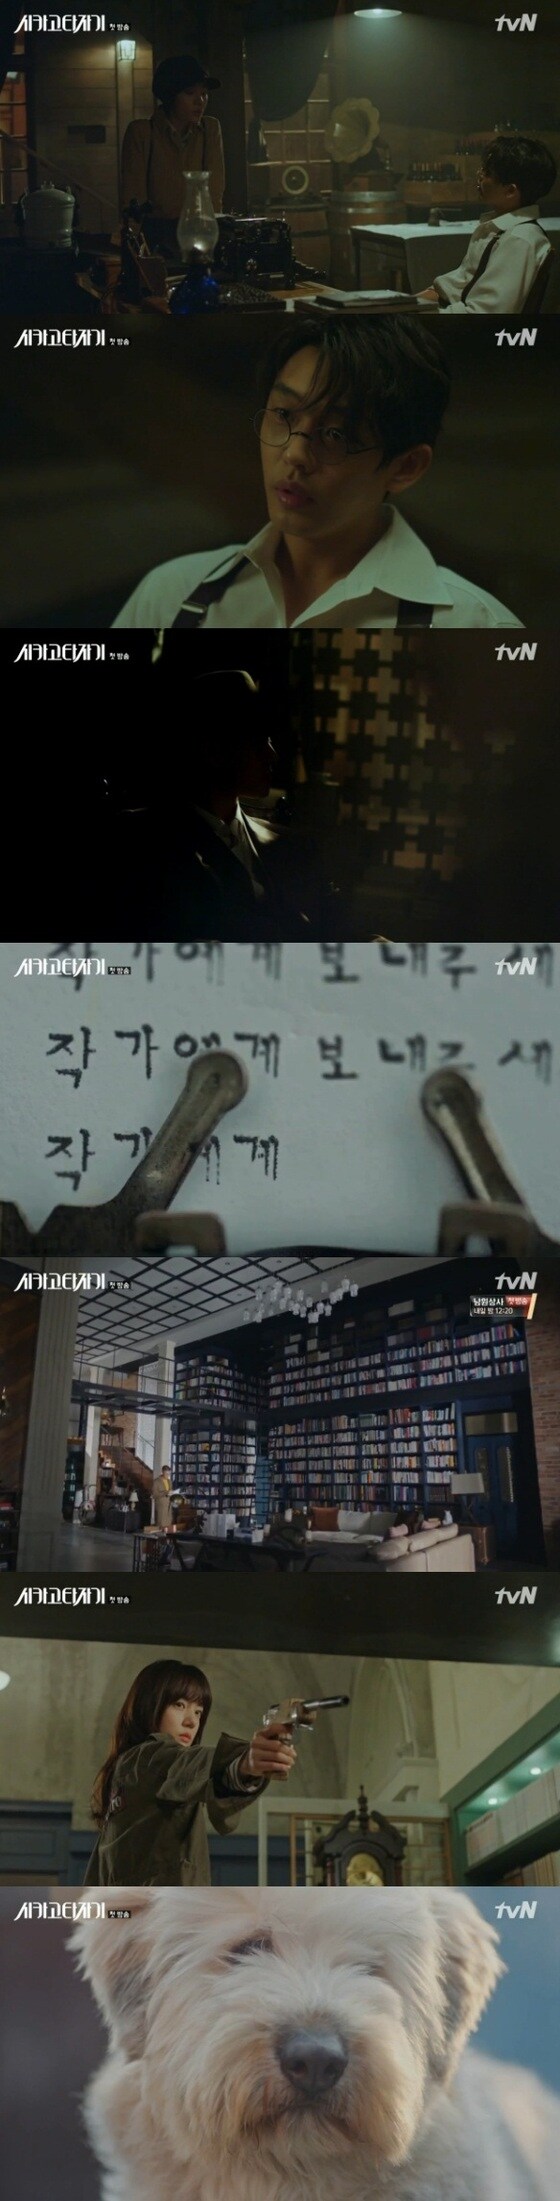 '시카고 타자기'가 지난 7일 처음 방송됐다. © News1star / tvN '시카고 타자기' 1회 캡처